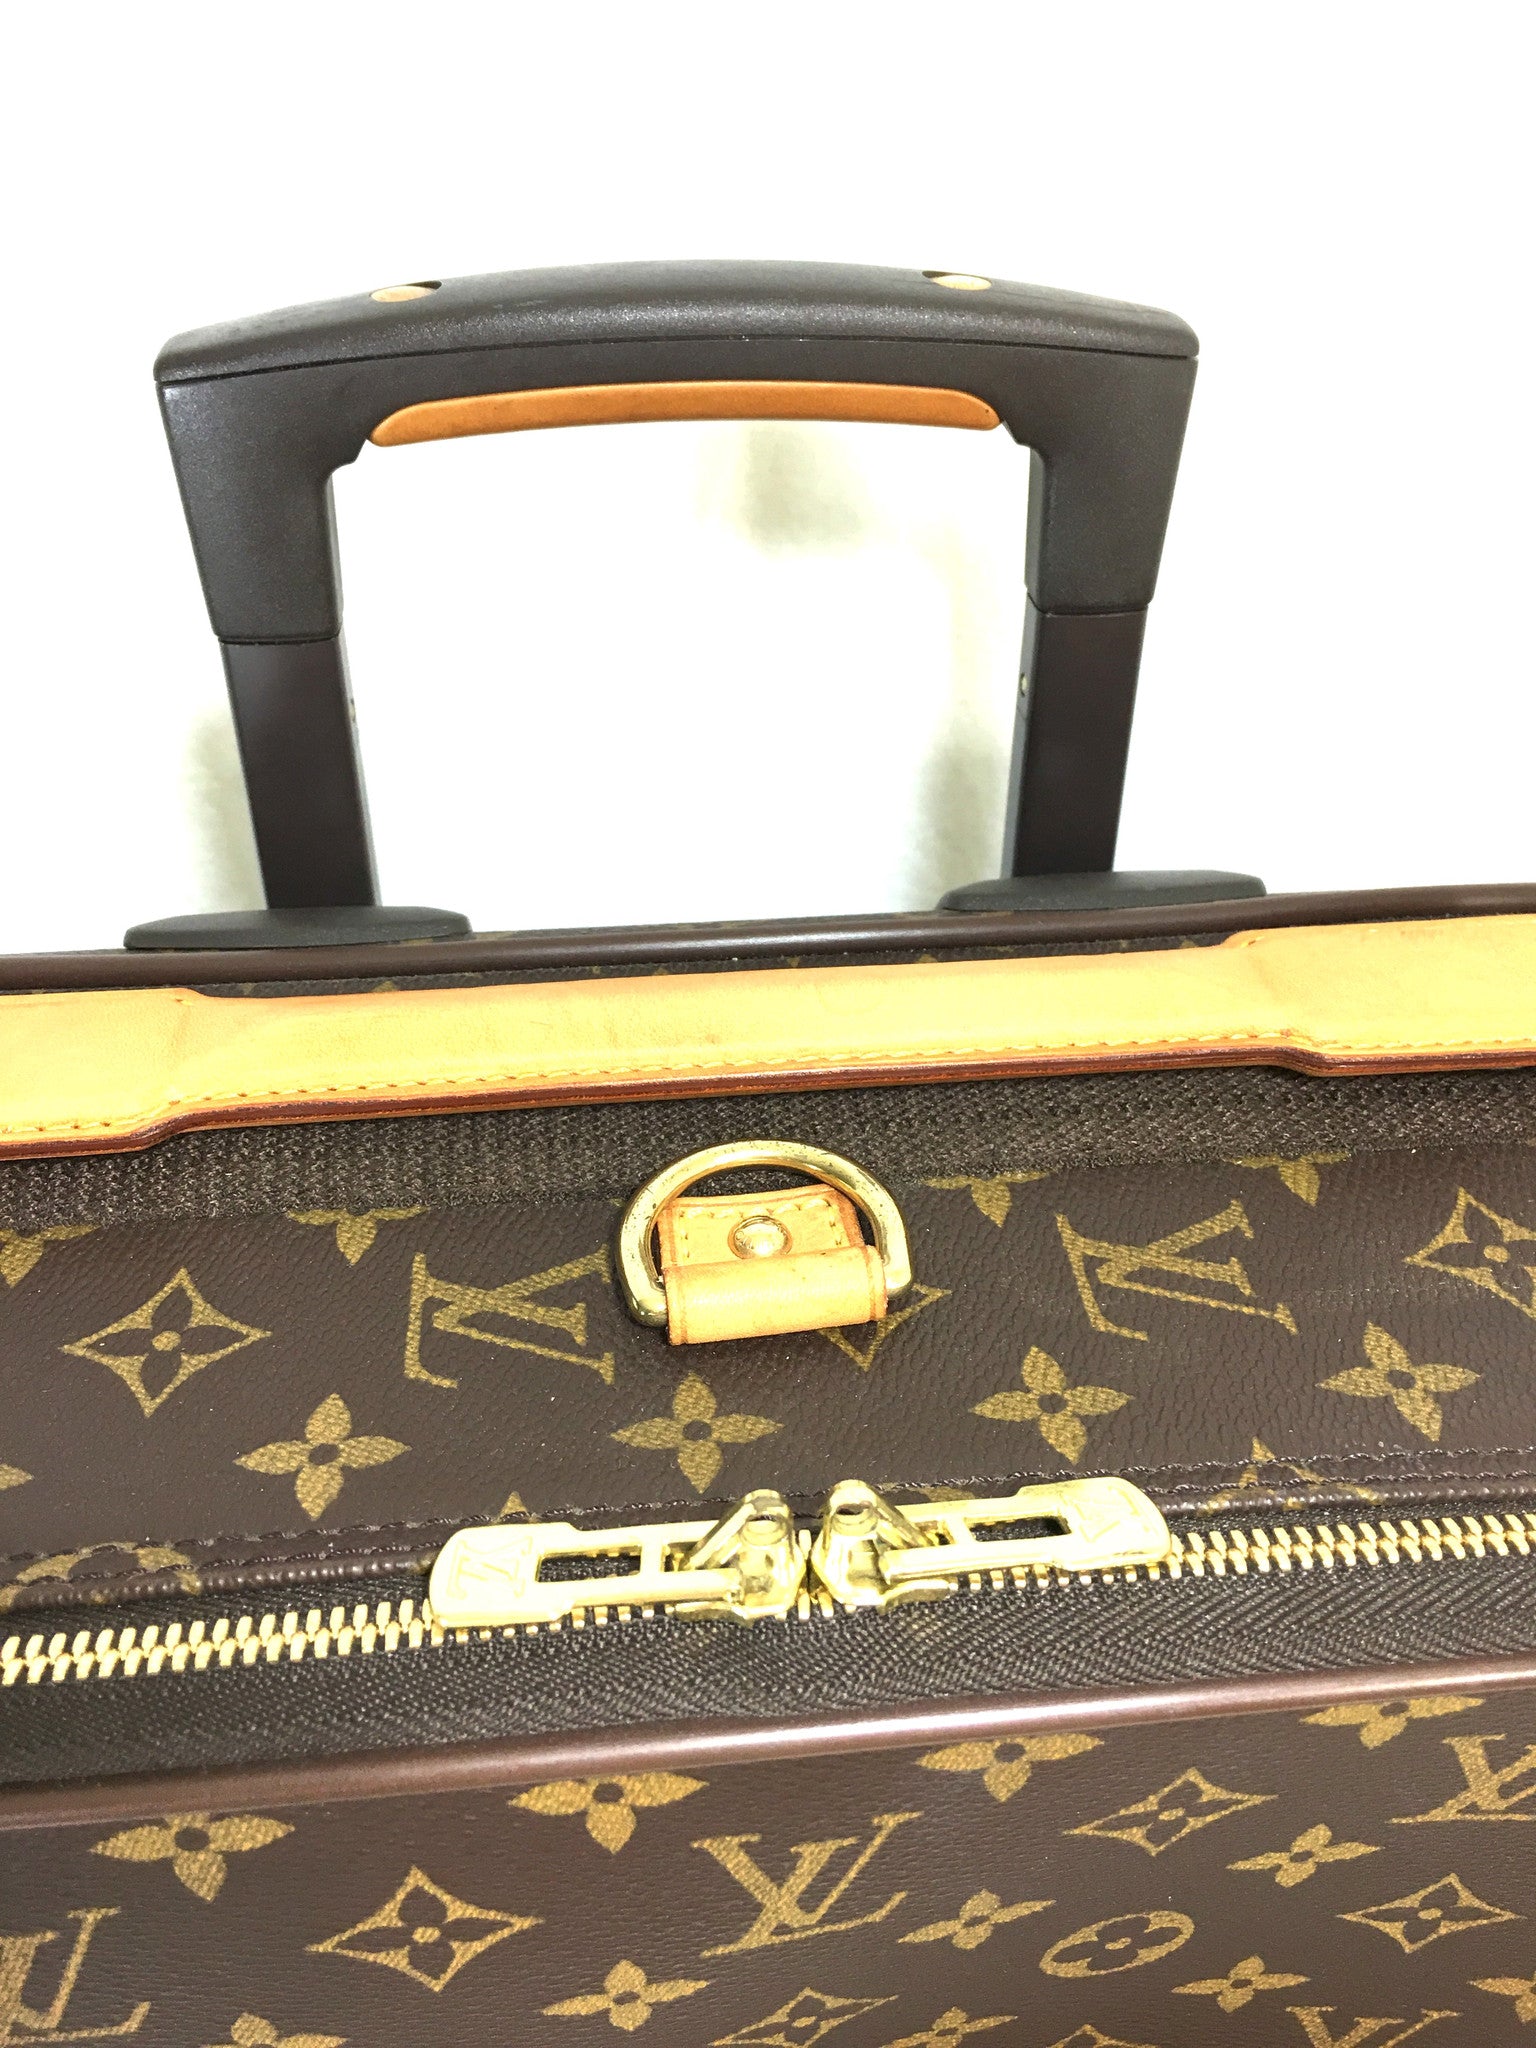 Louis Vuitton Monogram Pegase 55 Rolling Luggage 4LVJ0119